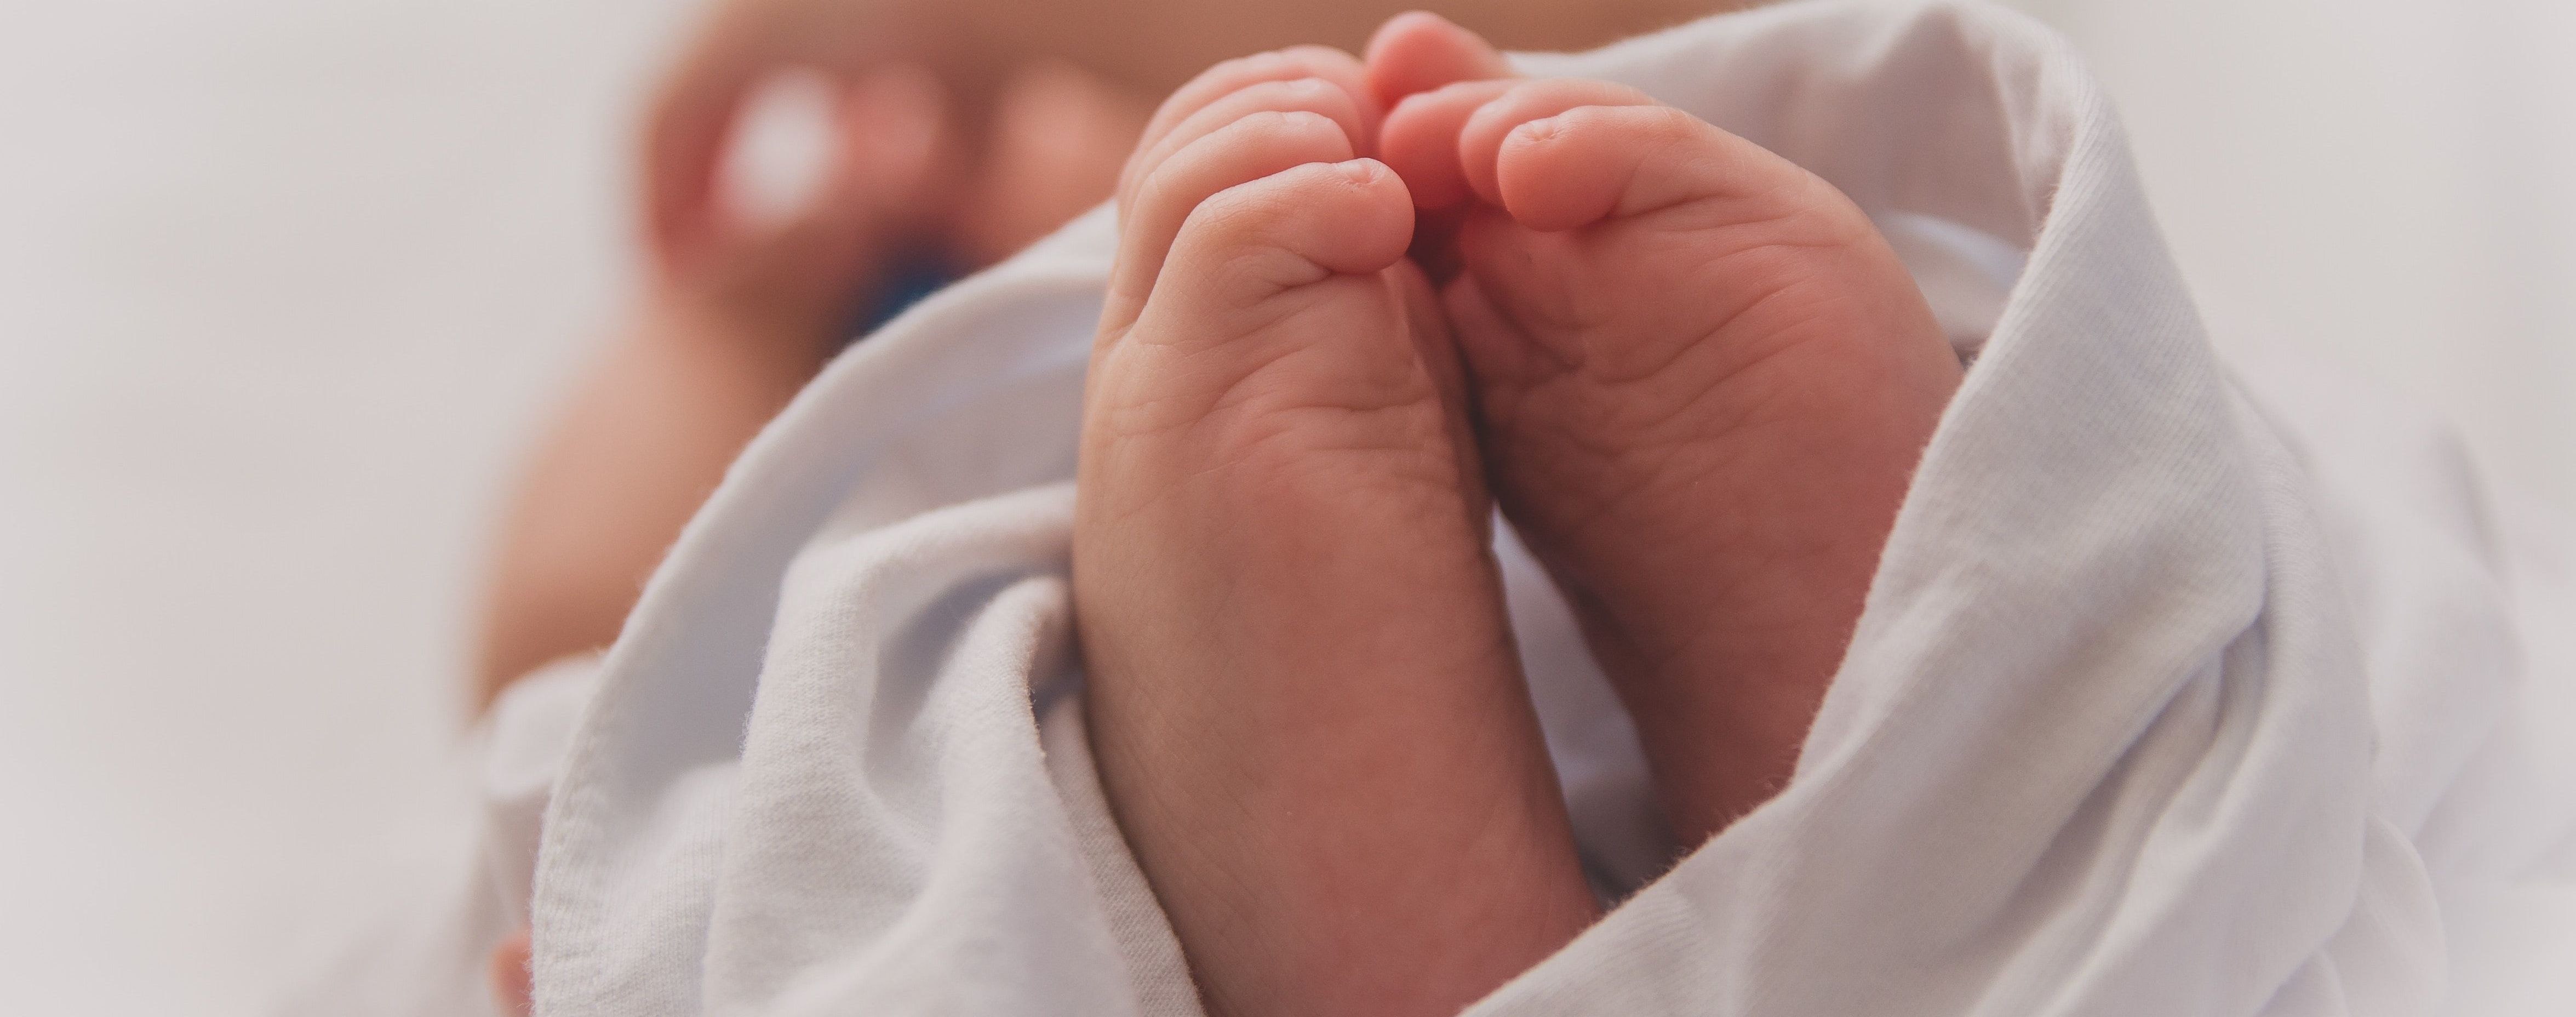 У новорожденного ребенка женщины с Ирпеня, у которой диагностировали коронавирус, тест не выявил болезни